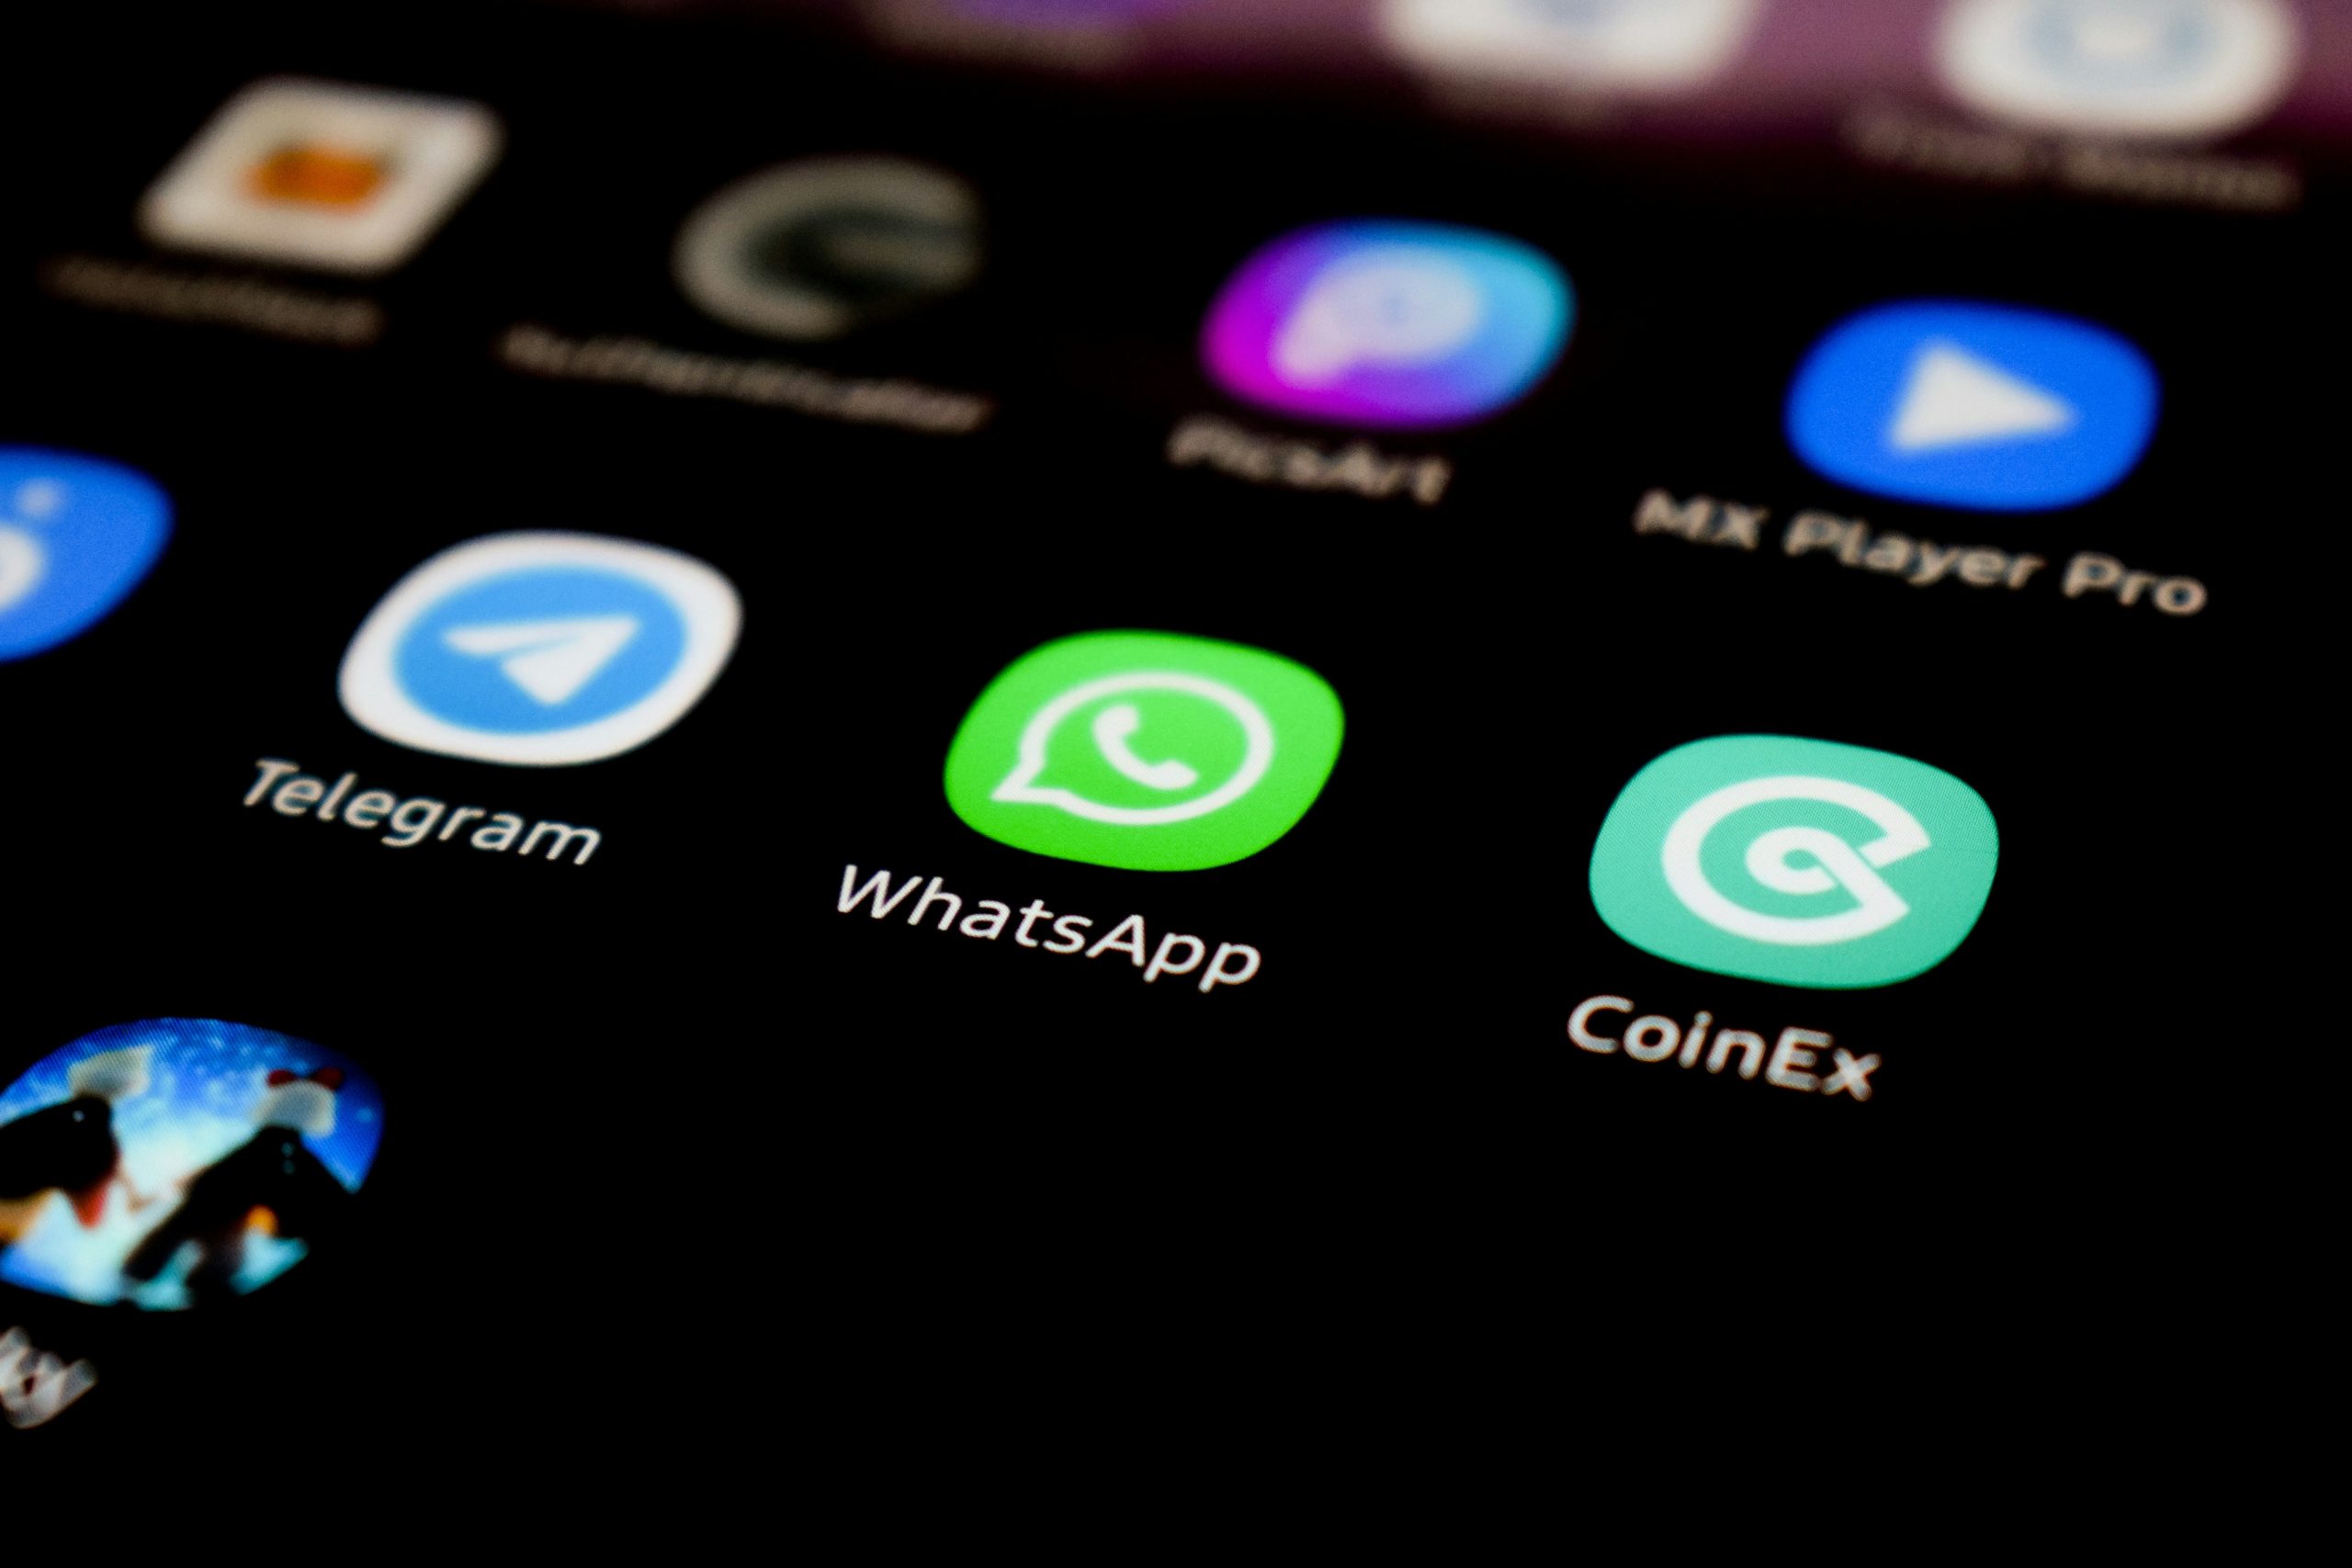 Новая функция WhatsApp*: сброс счетчика непрочитанных сообщений